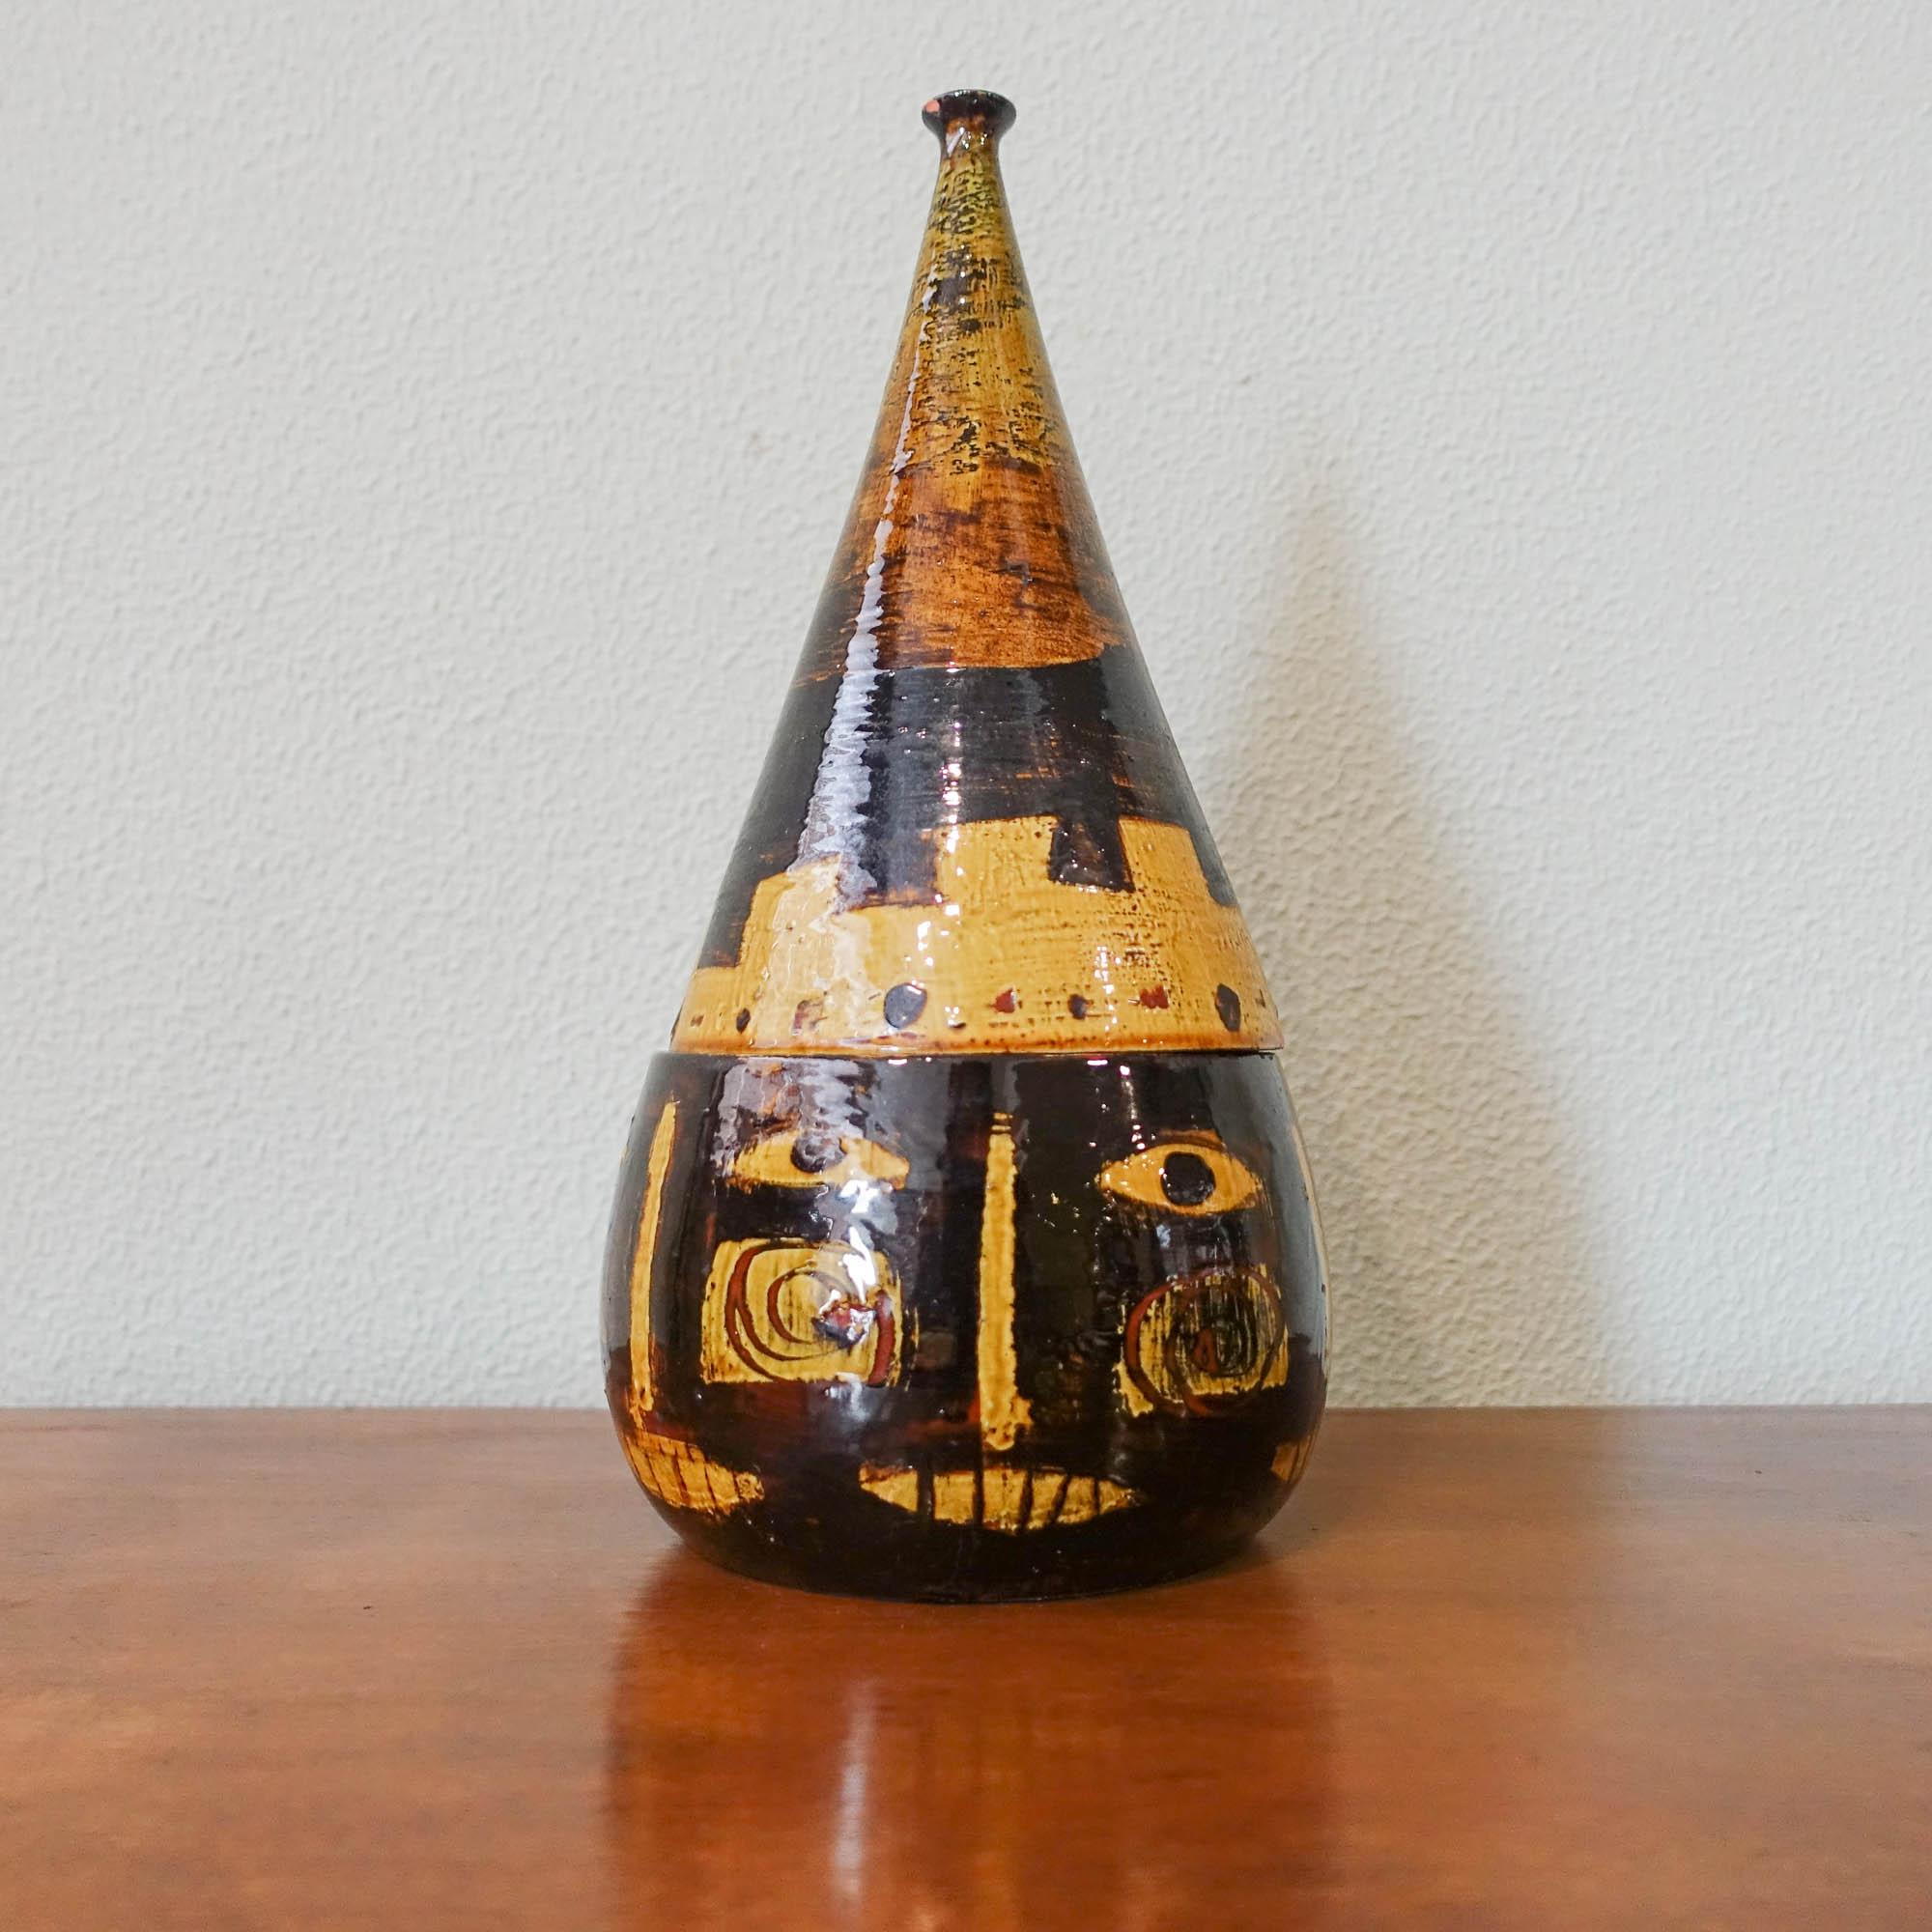 Diese Keramikdose wurde in den 1950er Jahren in Portugal entworfen und hergestellt. Wahrscheinlich von dem portugiesischen Künstler Júlio Pomar für Cerâmica Bombarrelense hergestellt, da es ähnliche Stücke von ihm gibt. Es hat eine anthropomorphe